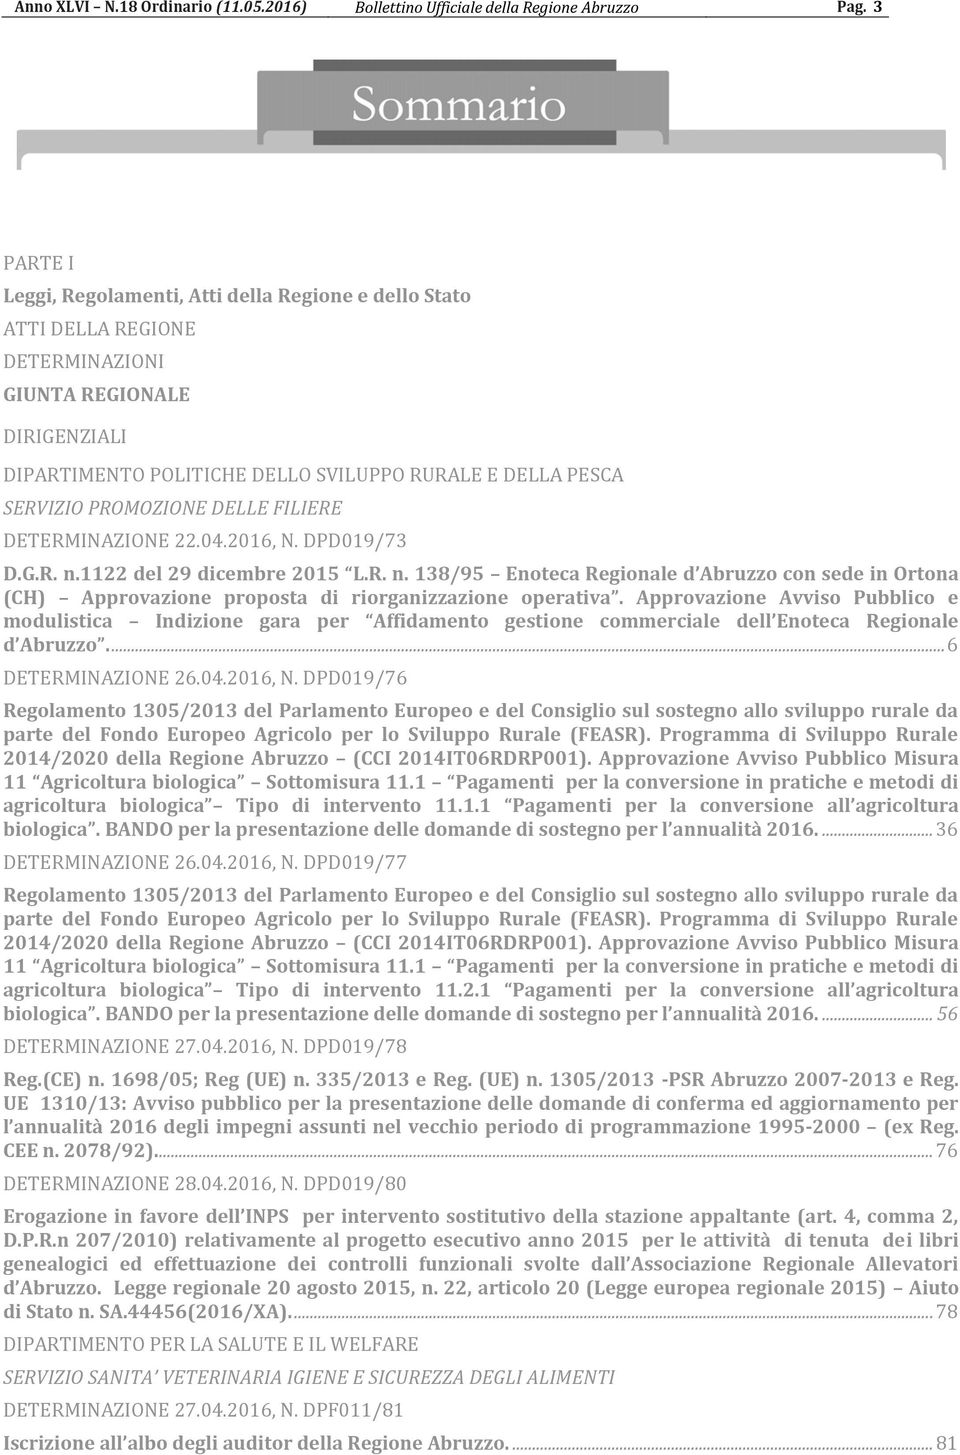 PROMOZIONE DELLE FILIERE DETERMINAZIONE 22.04.2016, N. DPD019/73 D.G.R. n.1122 del 29 dicembre 2015 L.R. n. 138/95 Enoteca Regionale d Abruzzo con sede in Ortona (CH) Approvazione proposta di riorganizzazione operativa.